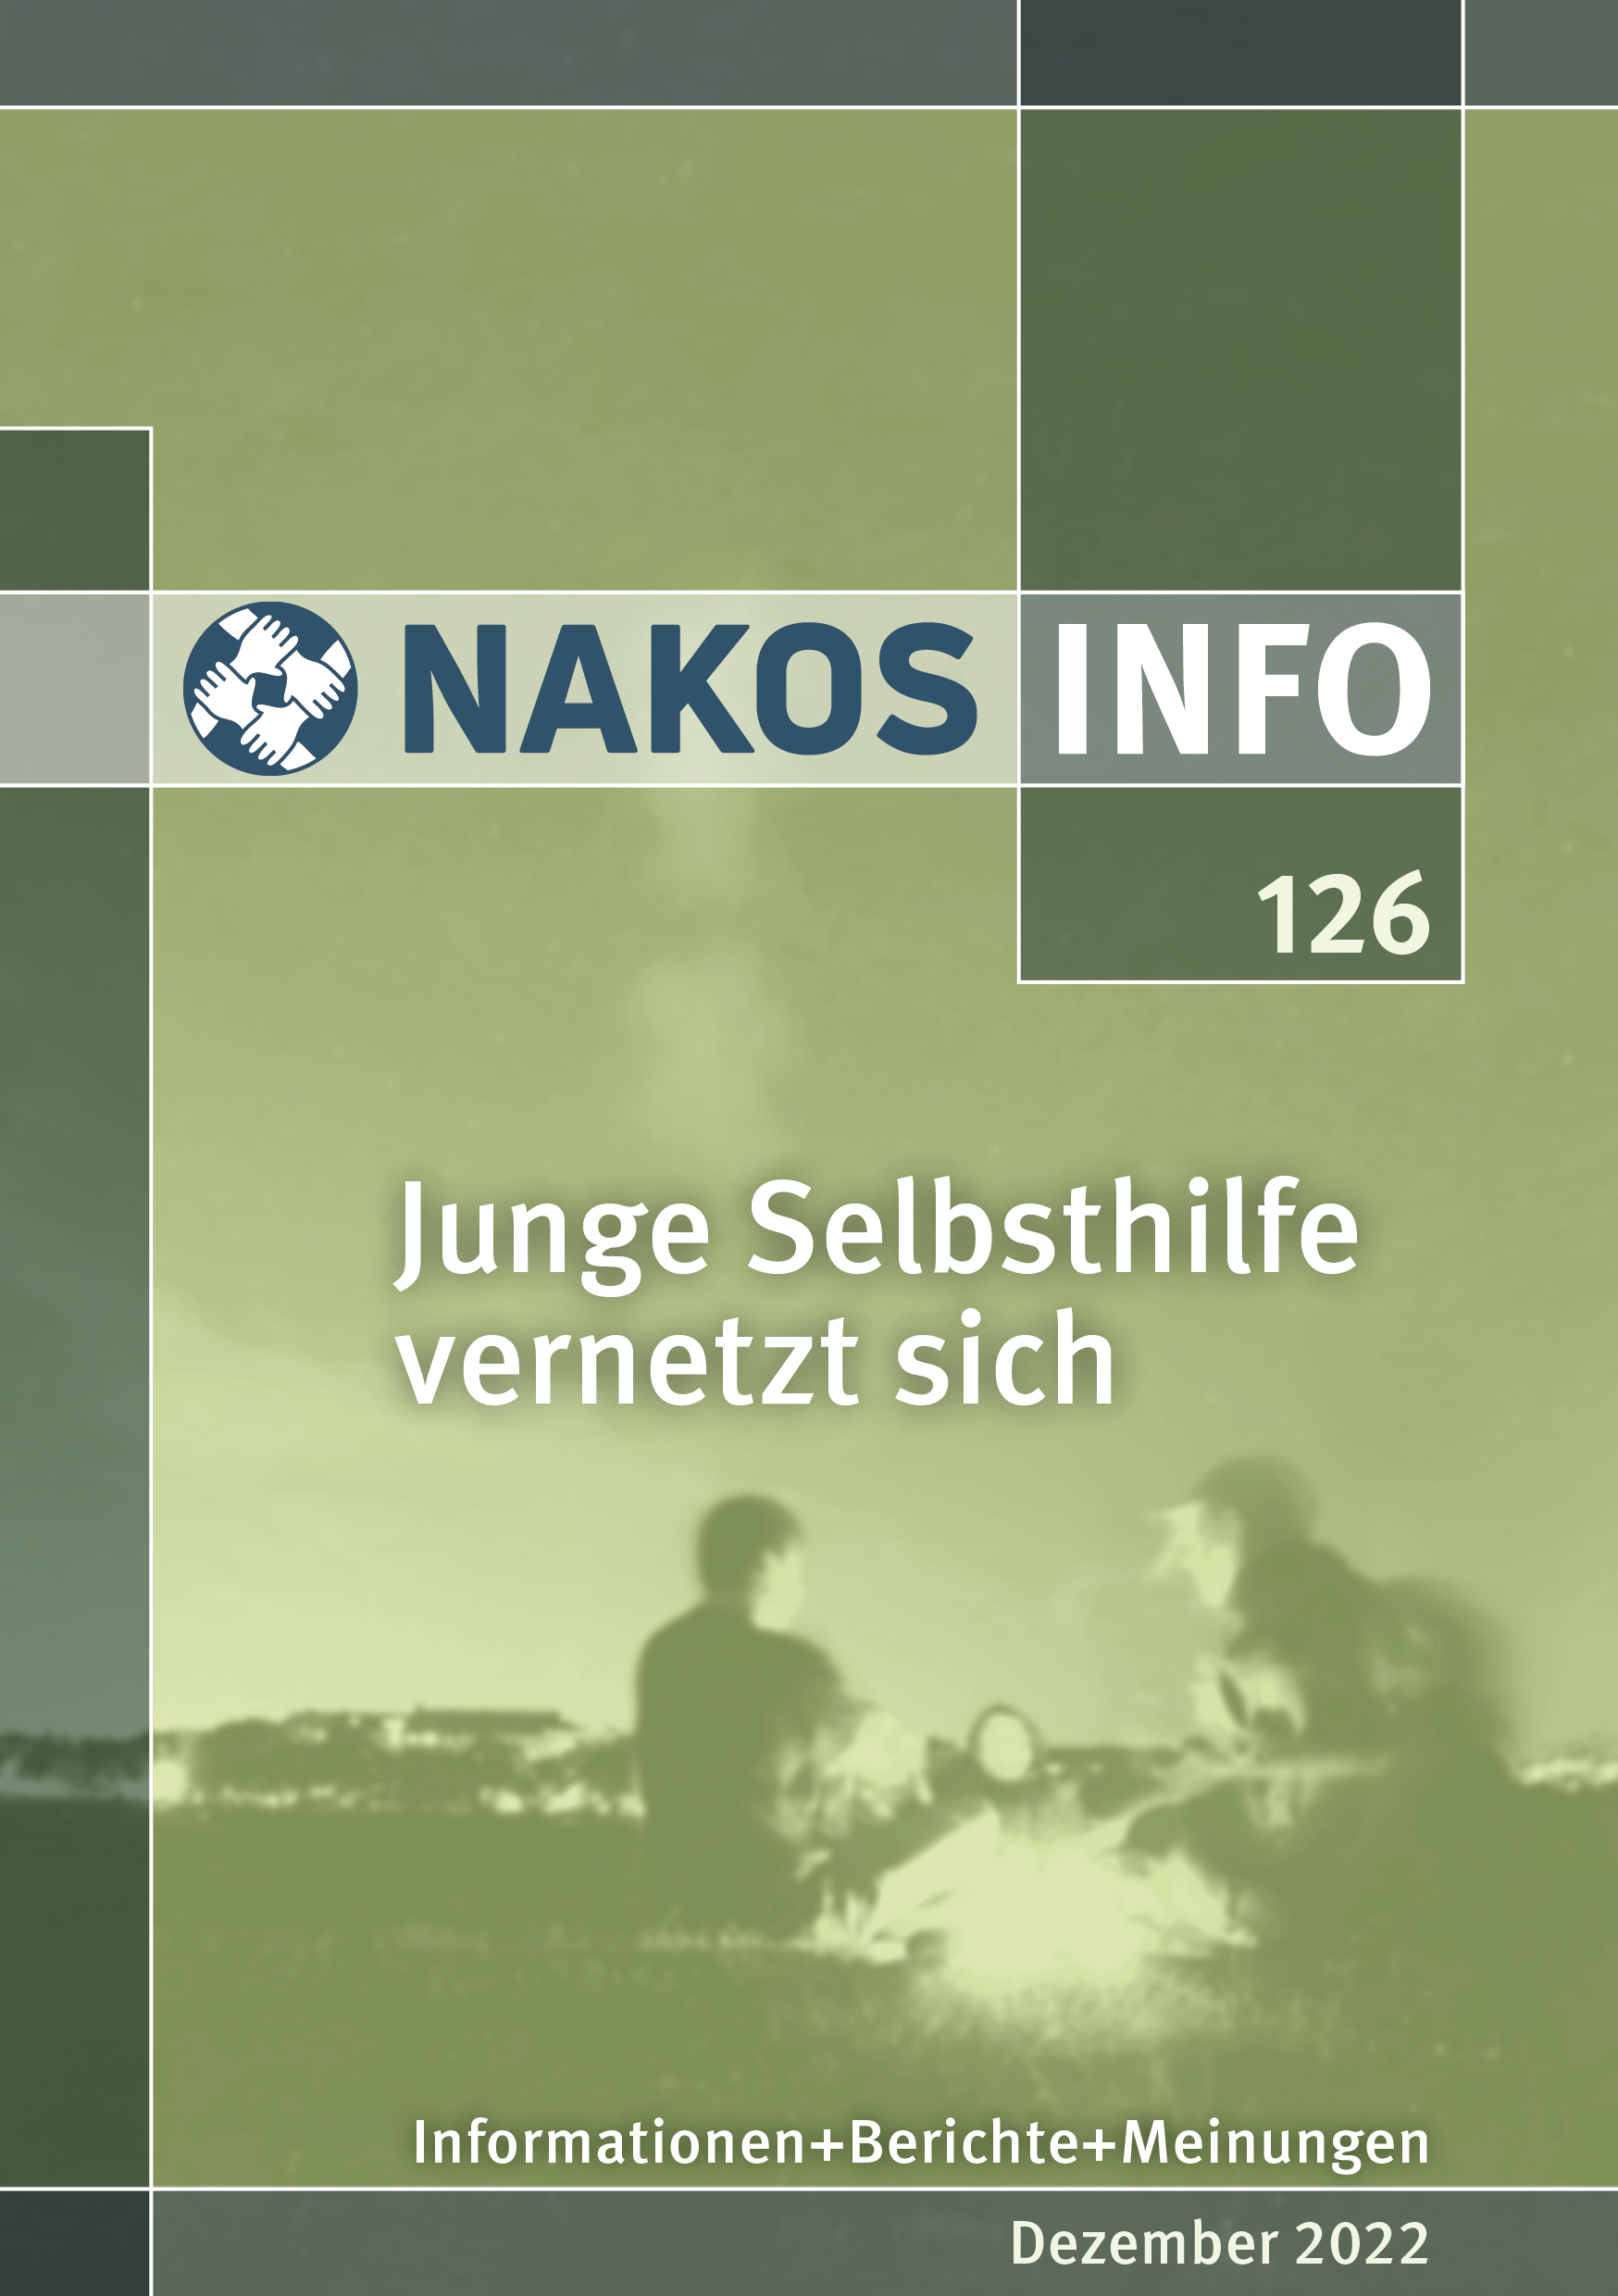 data/Bilder/Fachpublikationen/NAKOS-INFO-126.jpg